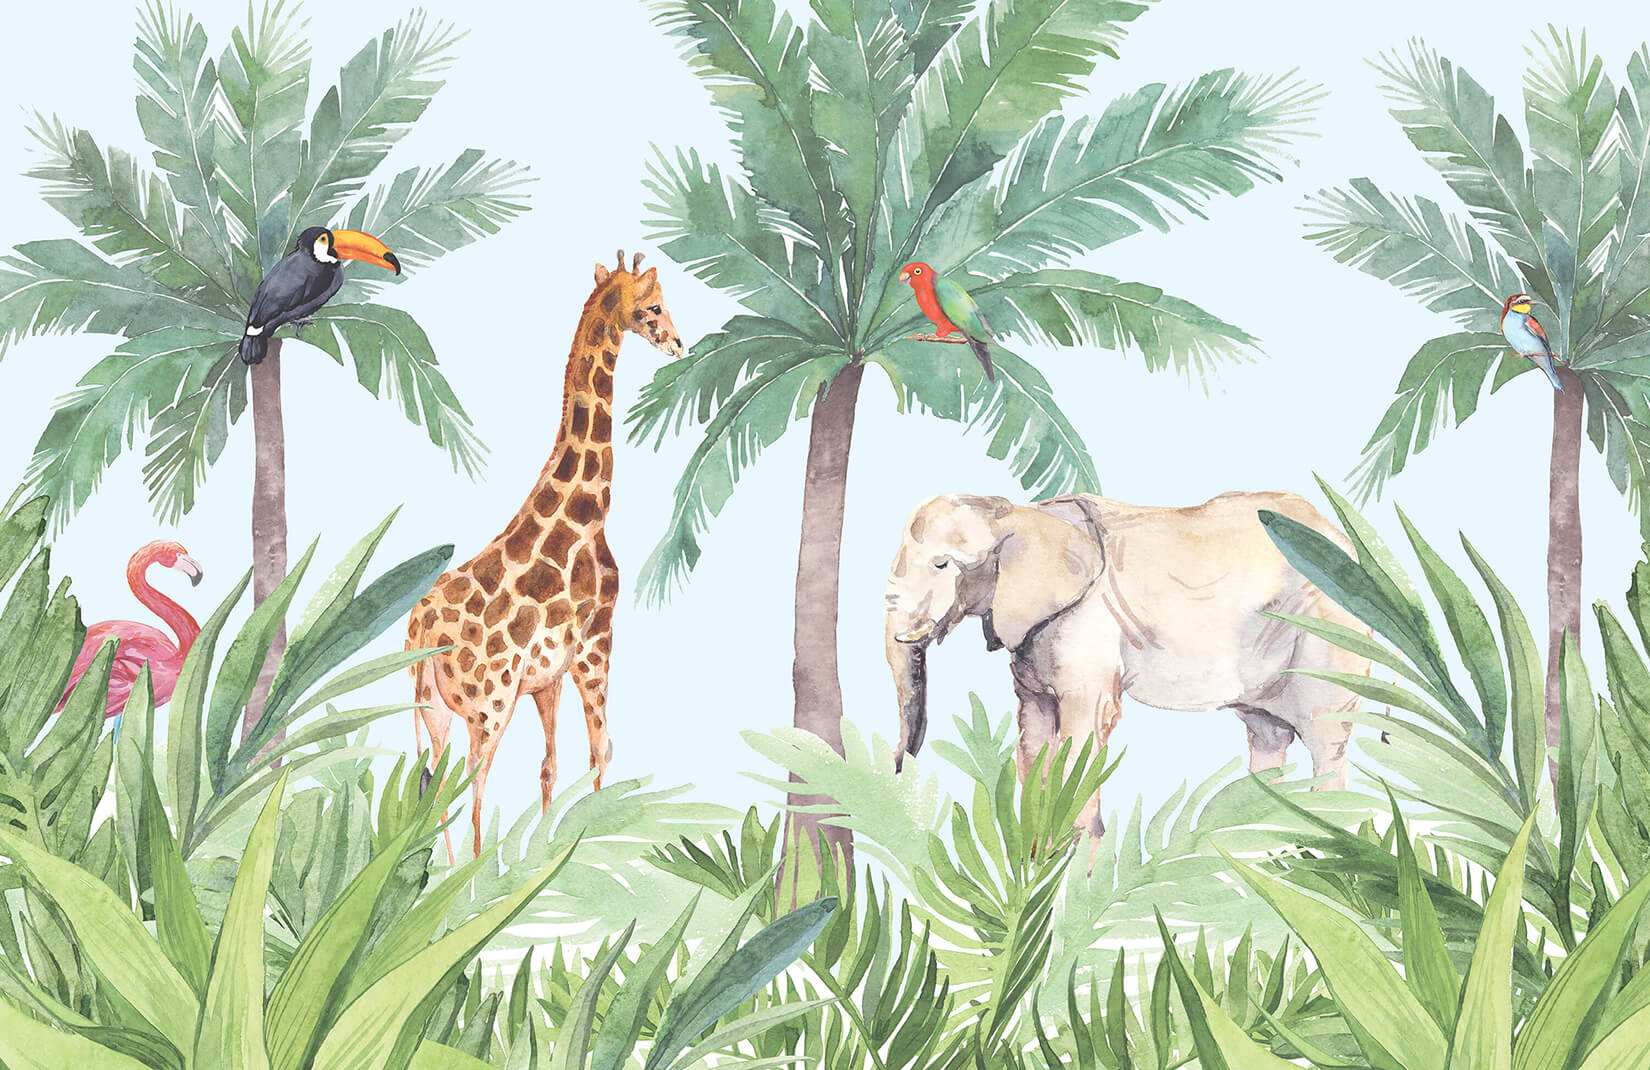 ジャングル壁紙壁画,密林,陸生動物,キリン科,野生動物,工場